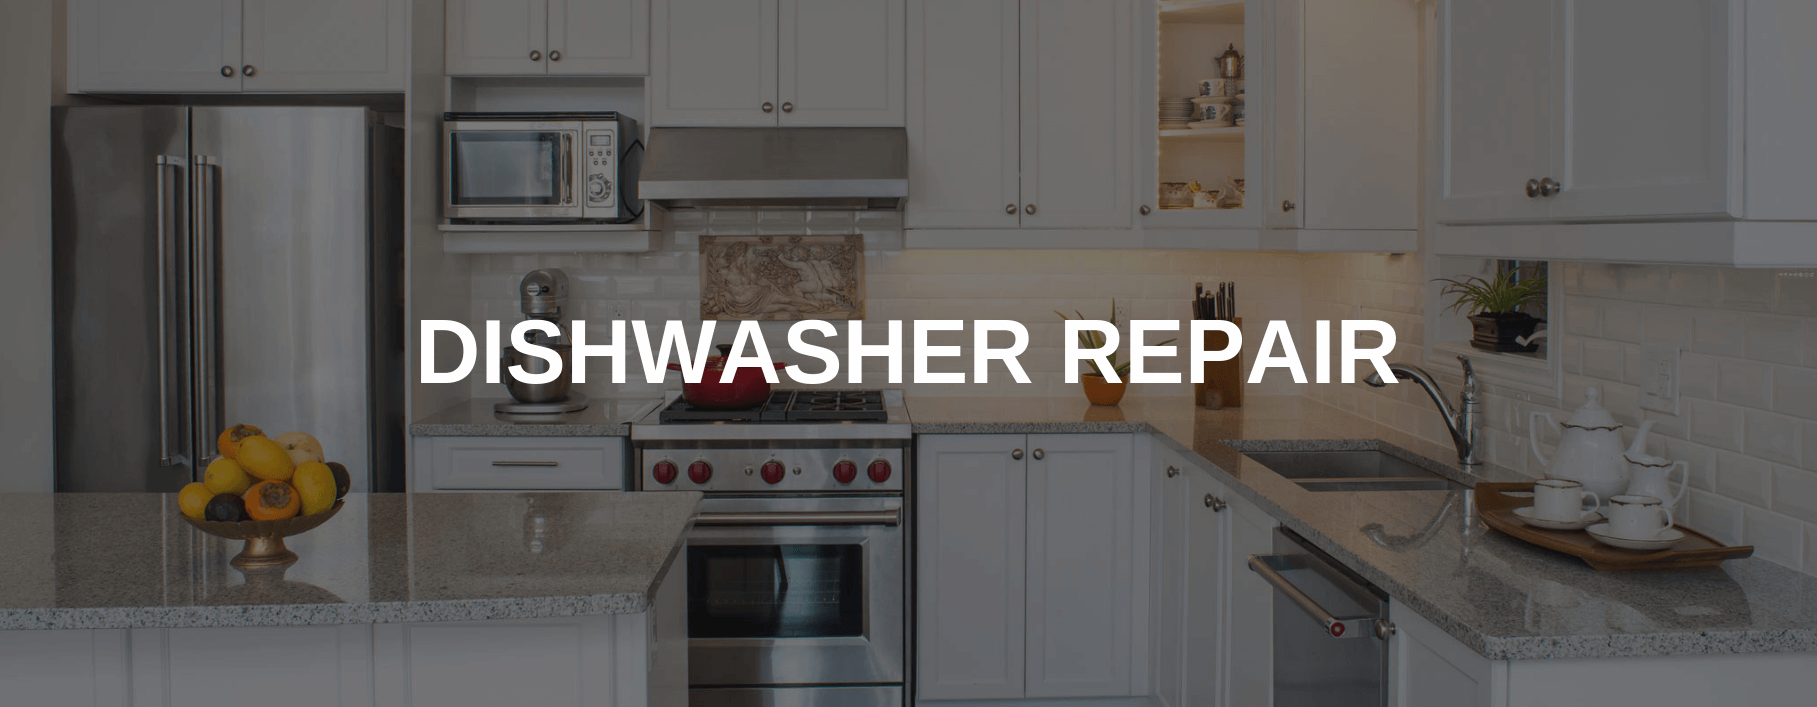 dishwasher repair bethesda